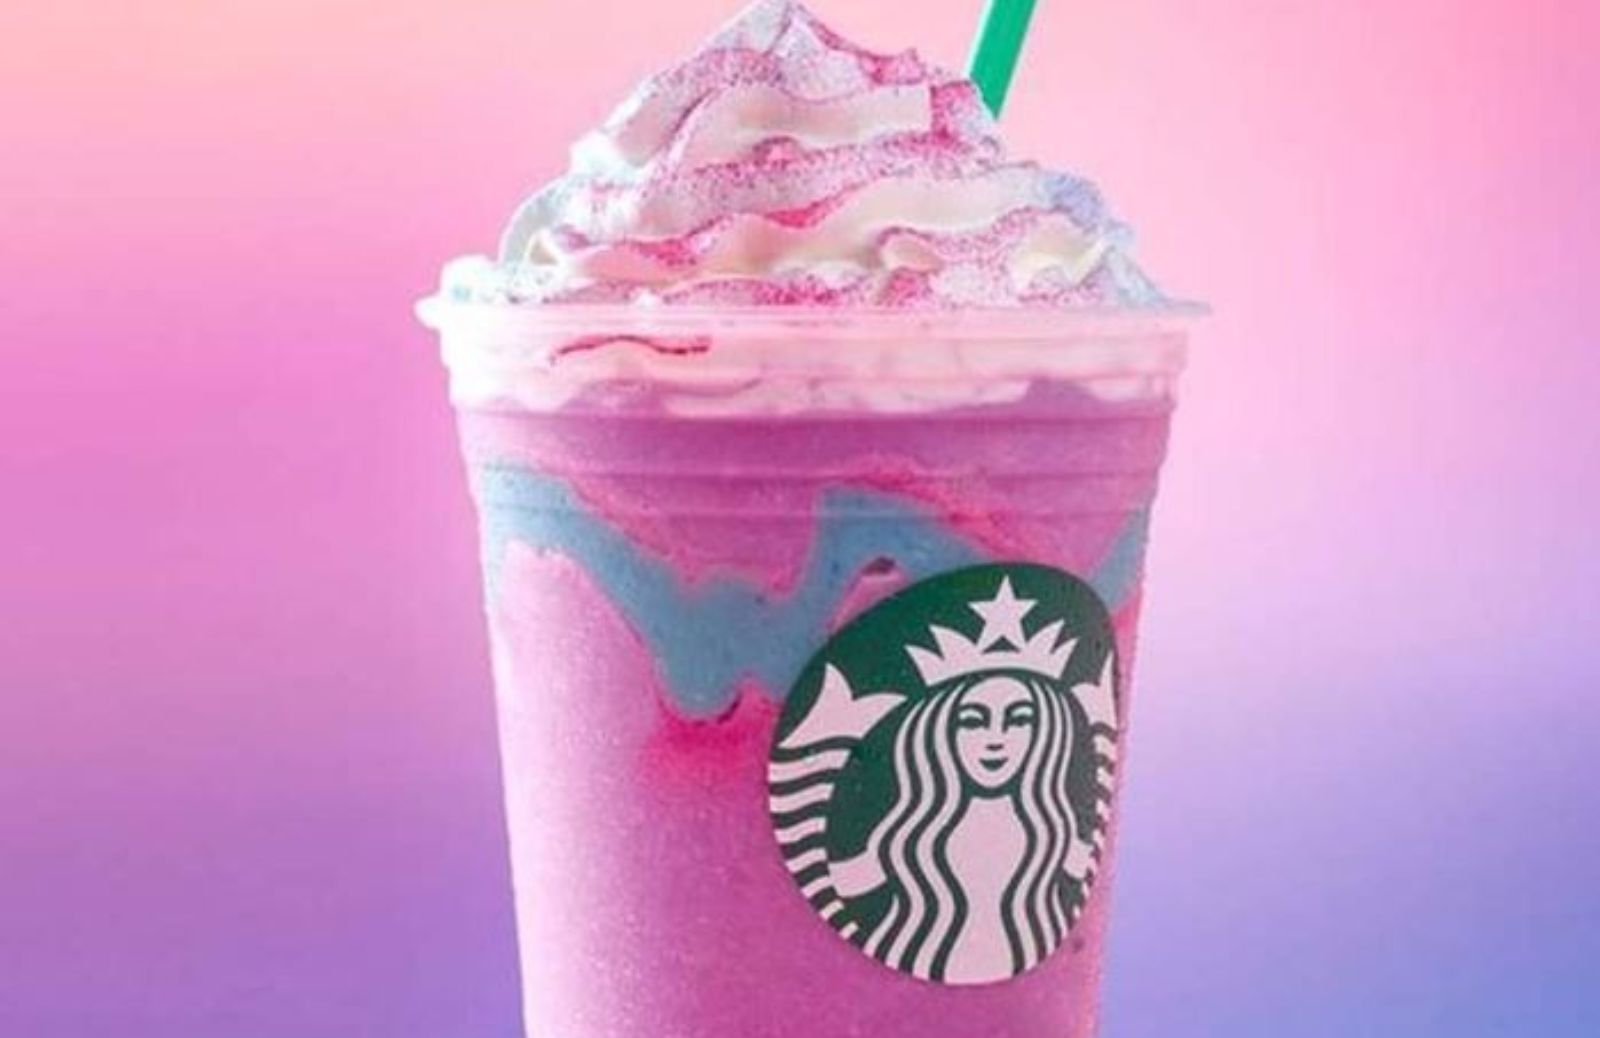 Le ricette di Starbucks: come preparare in casa l'unicorn frappuccino